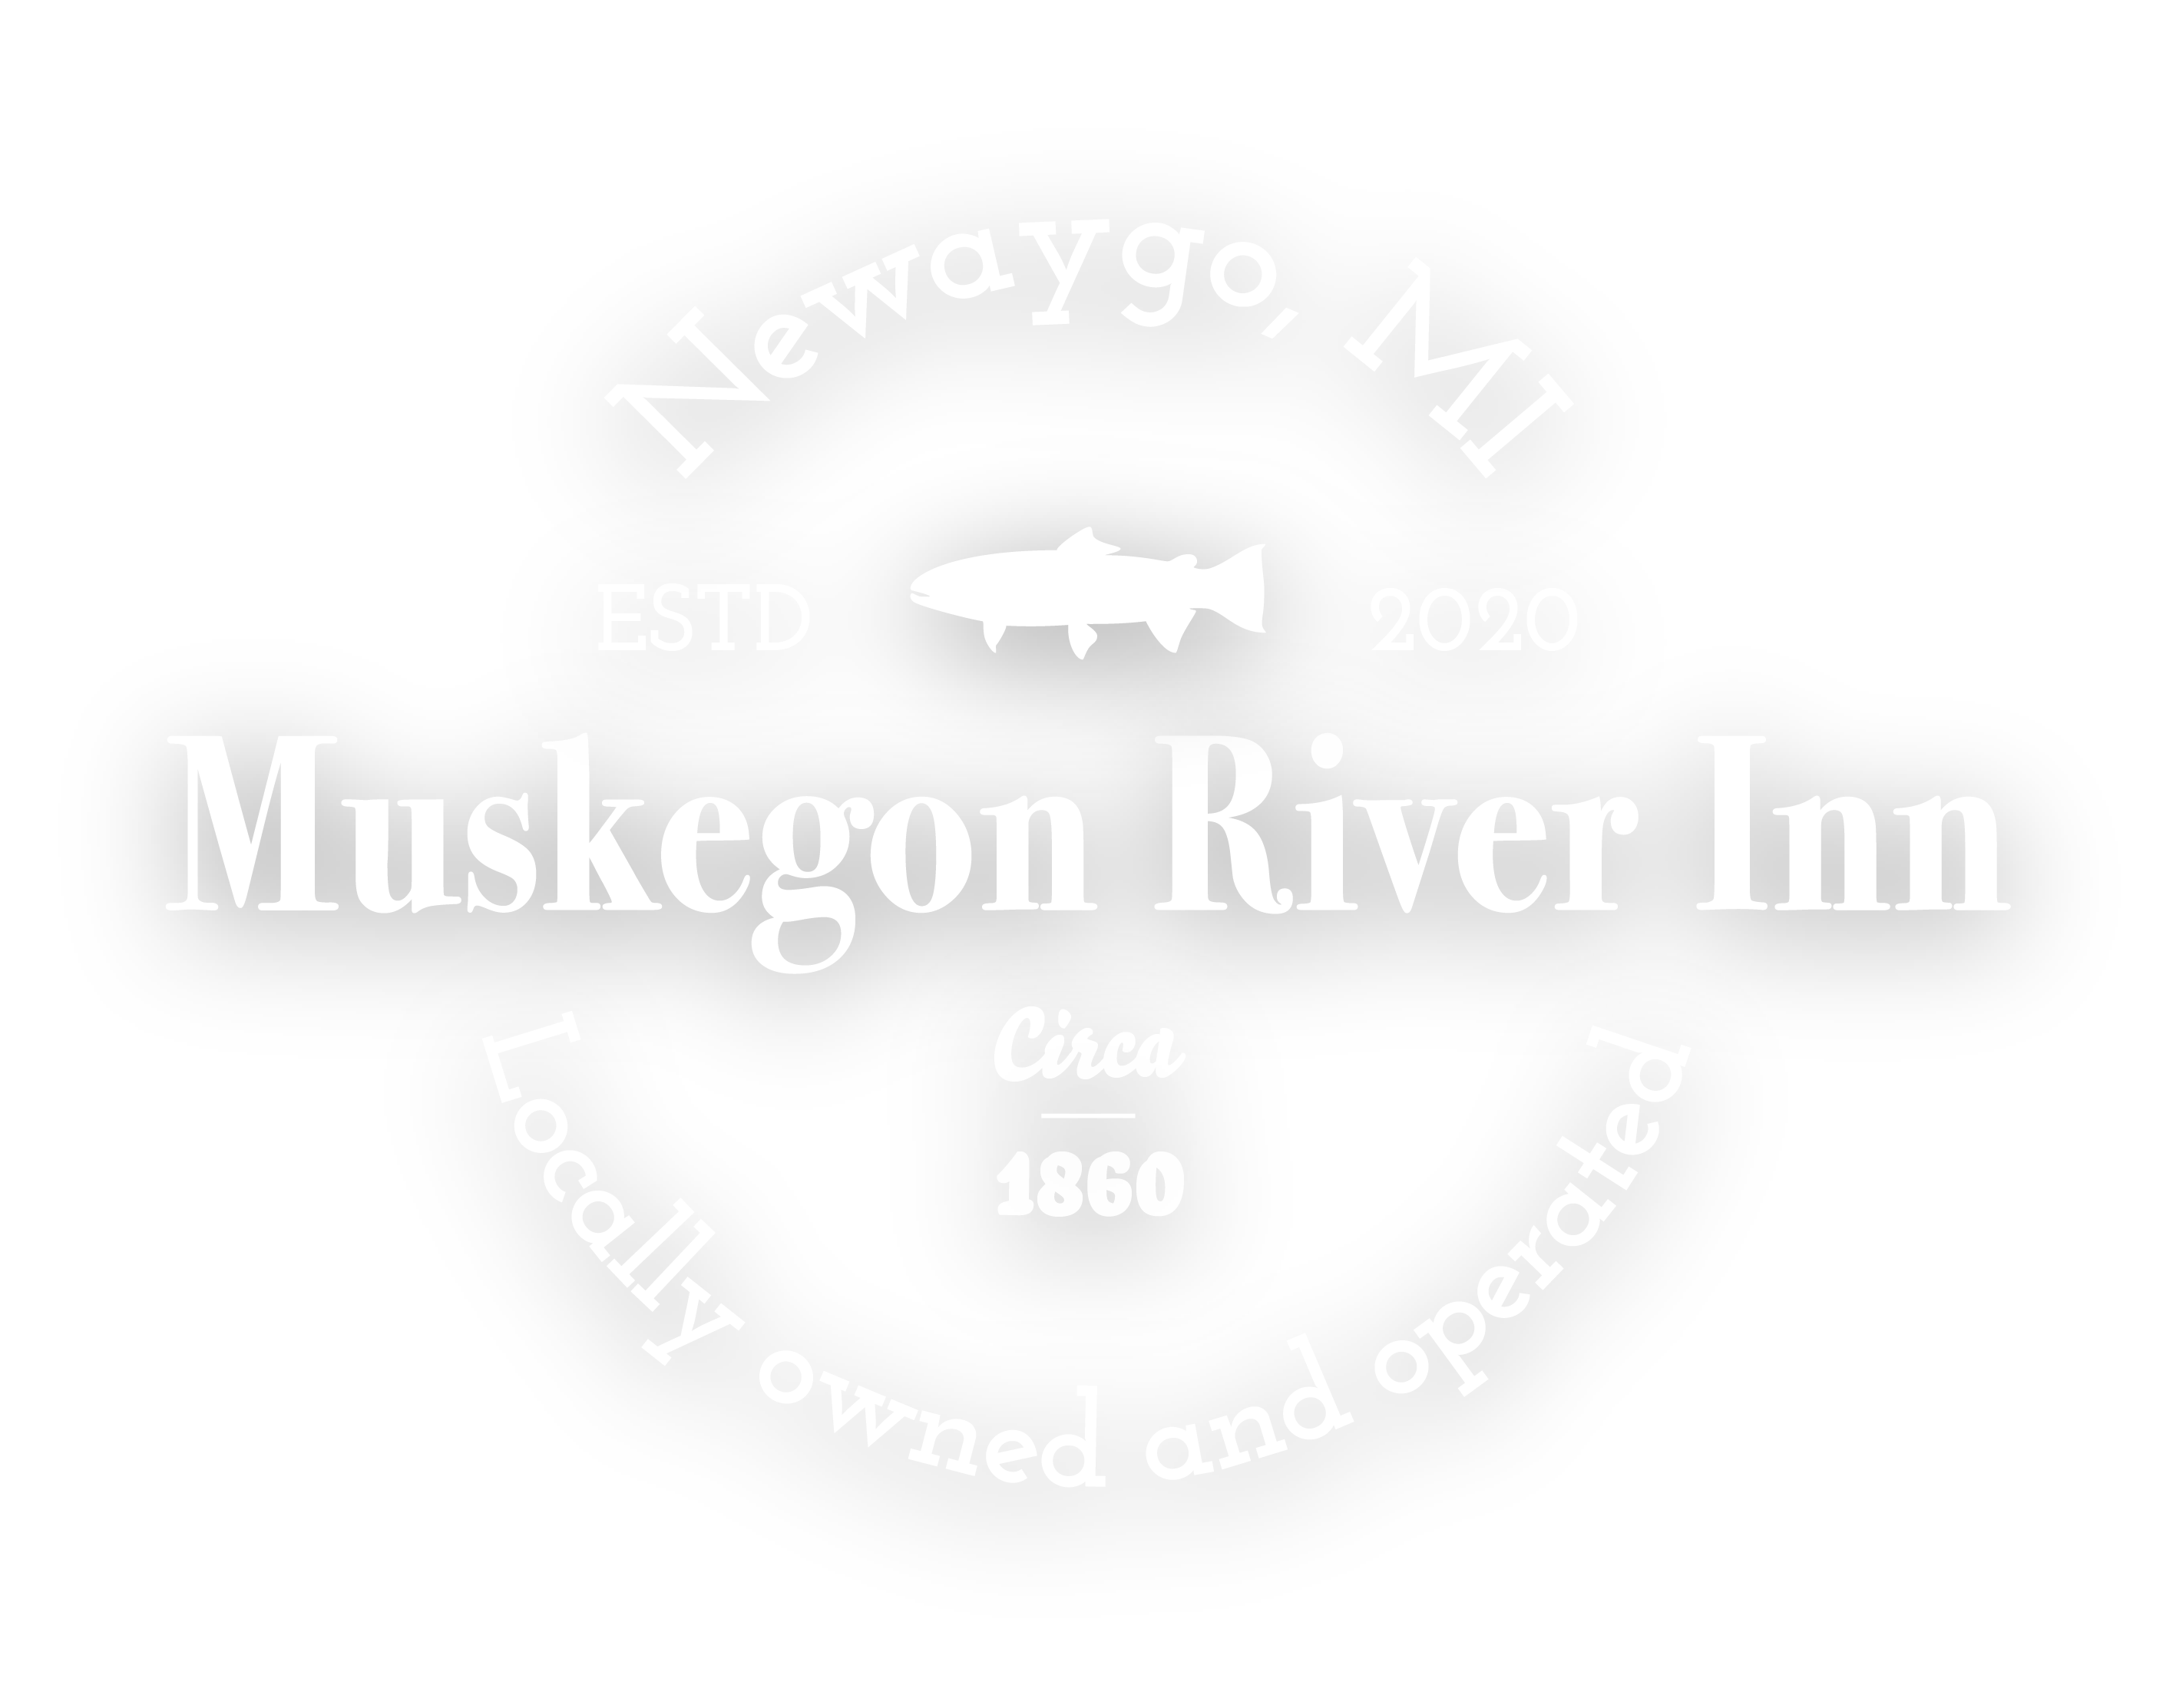 Muskegon River Inn